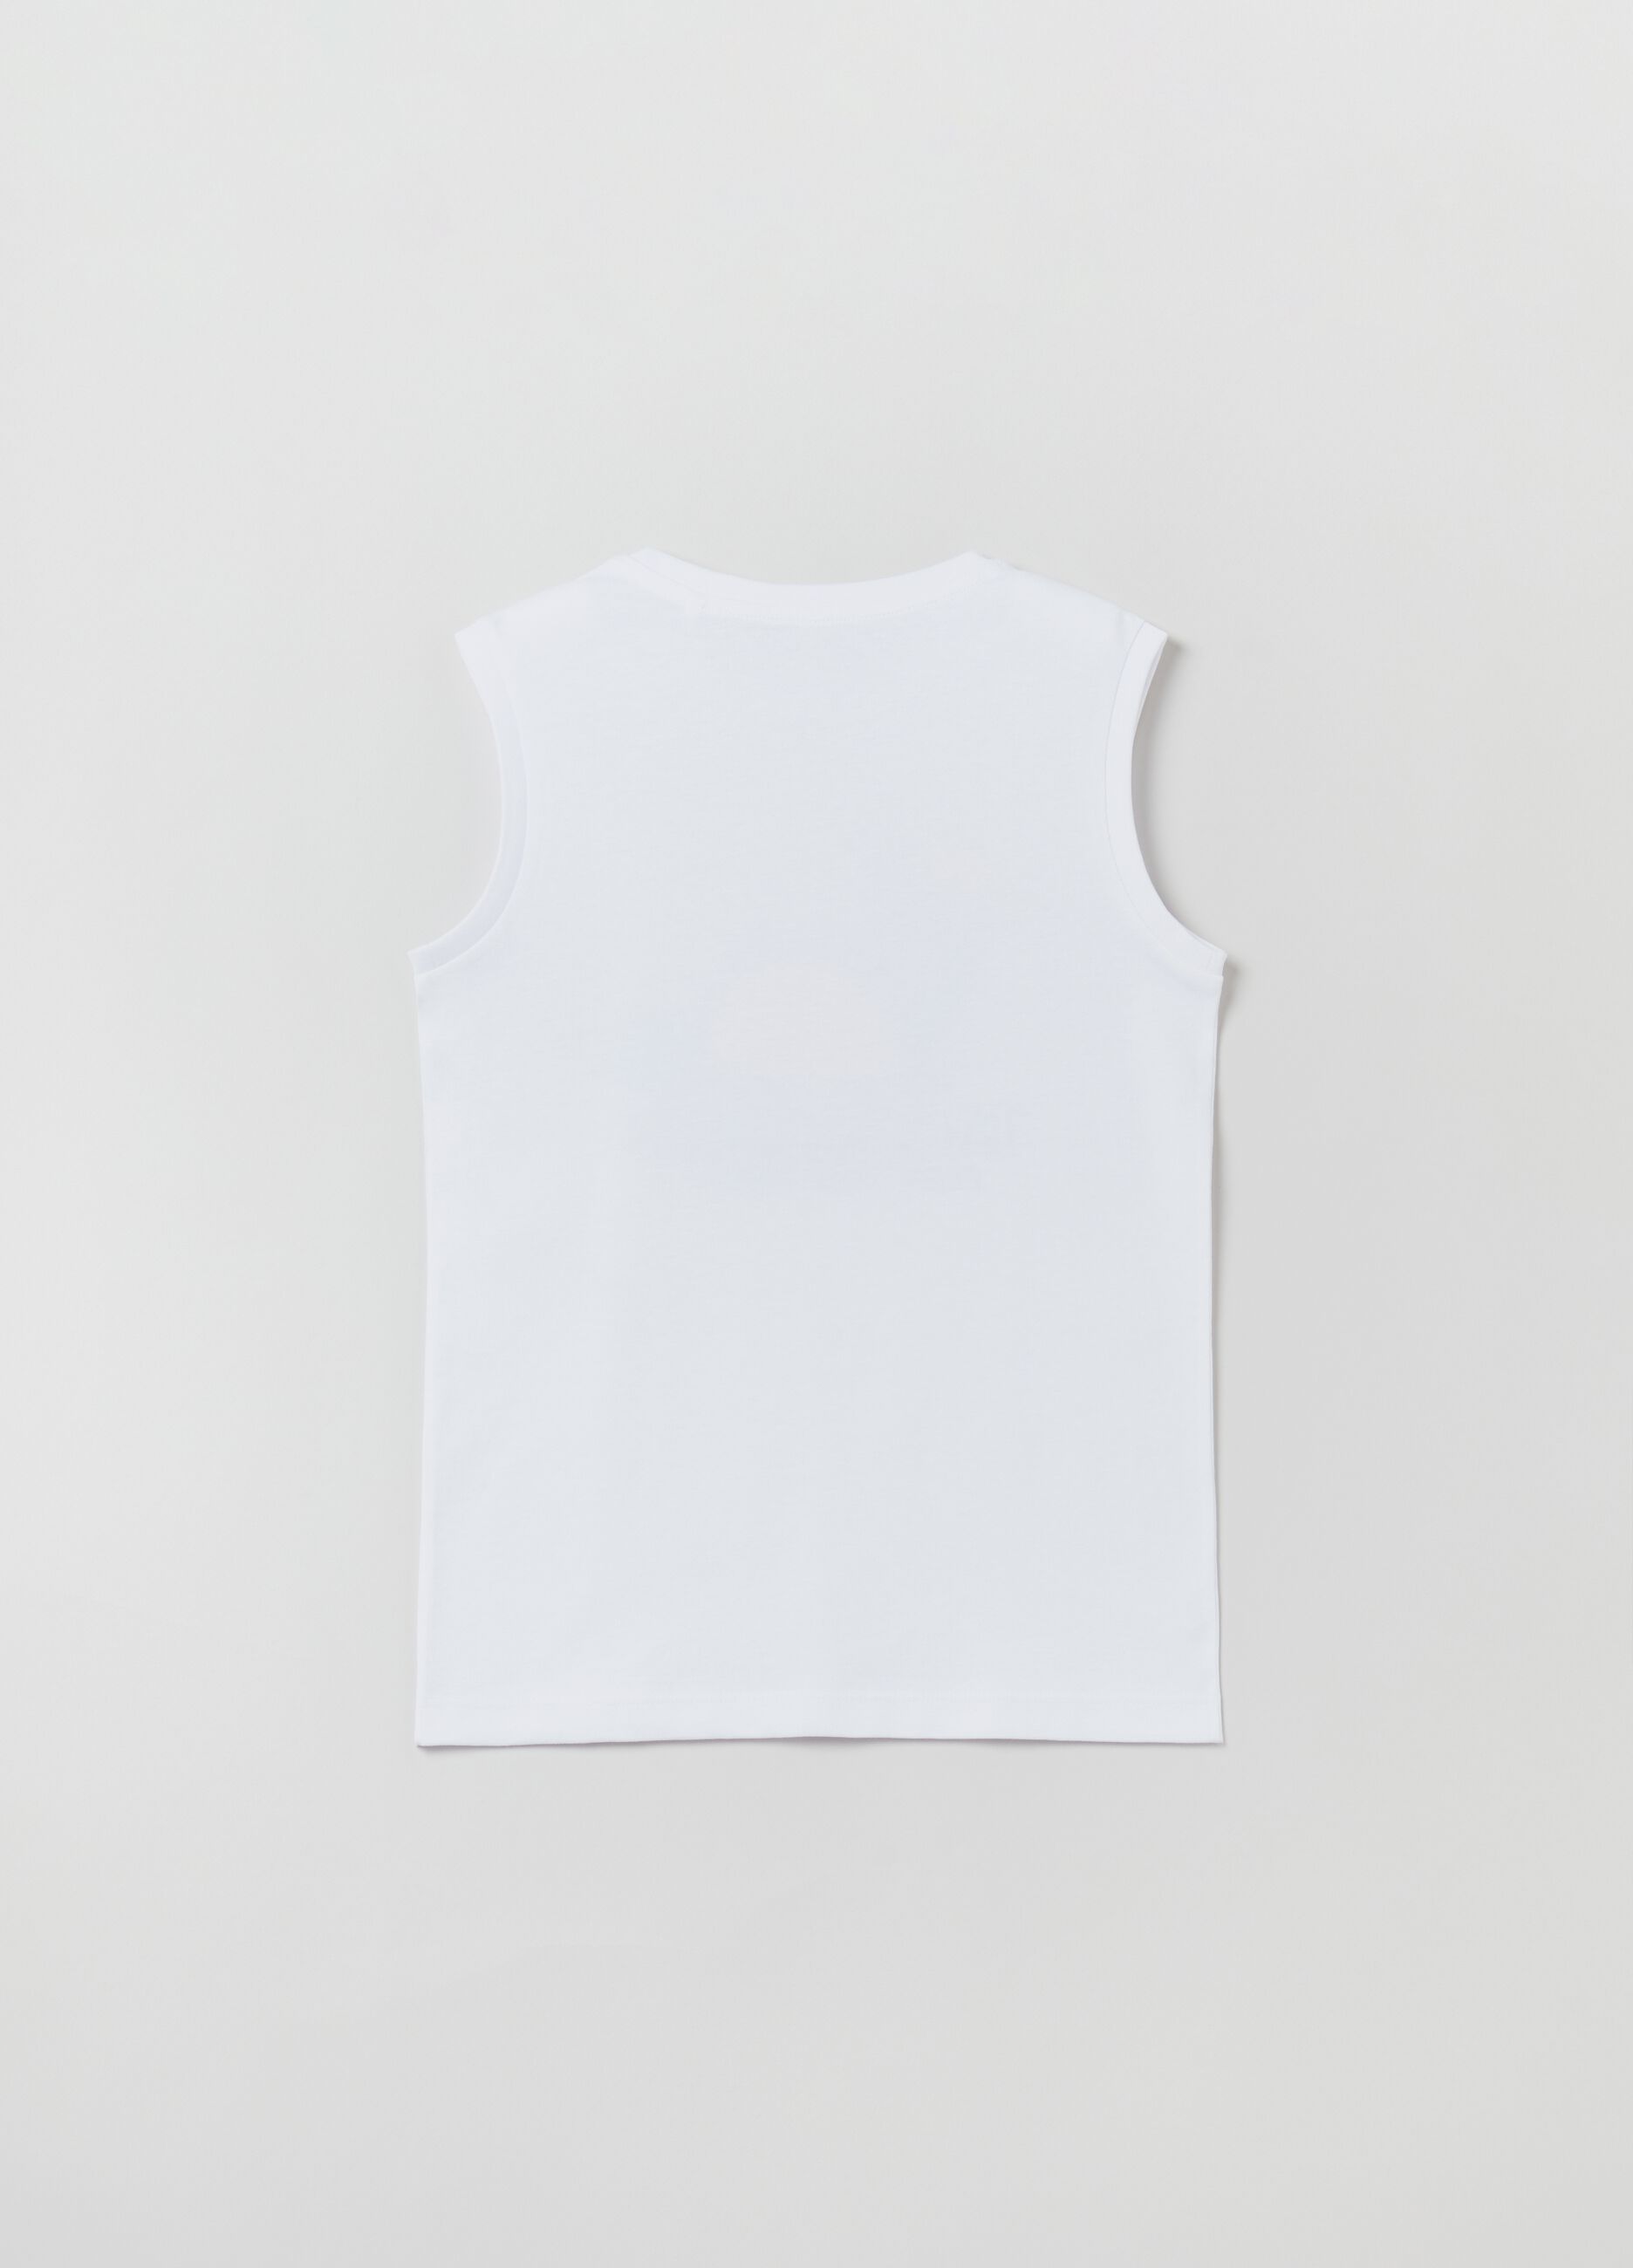 Cotton racerback vest with print